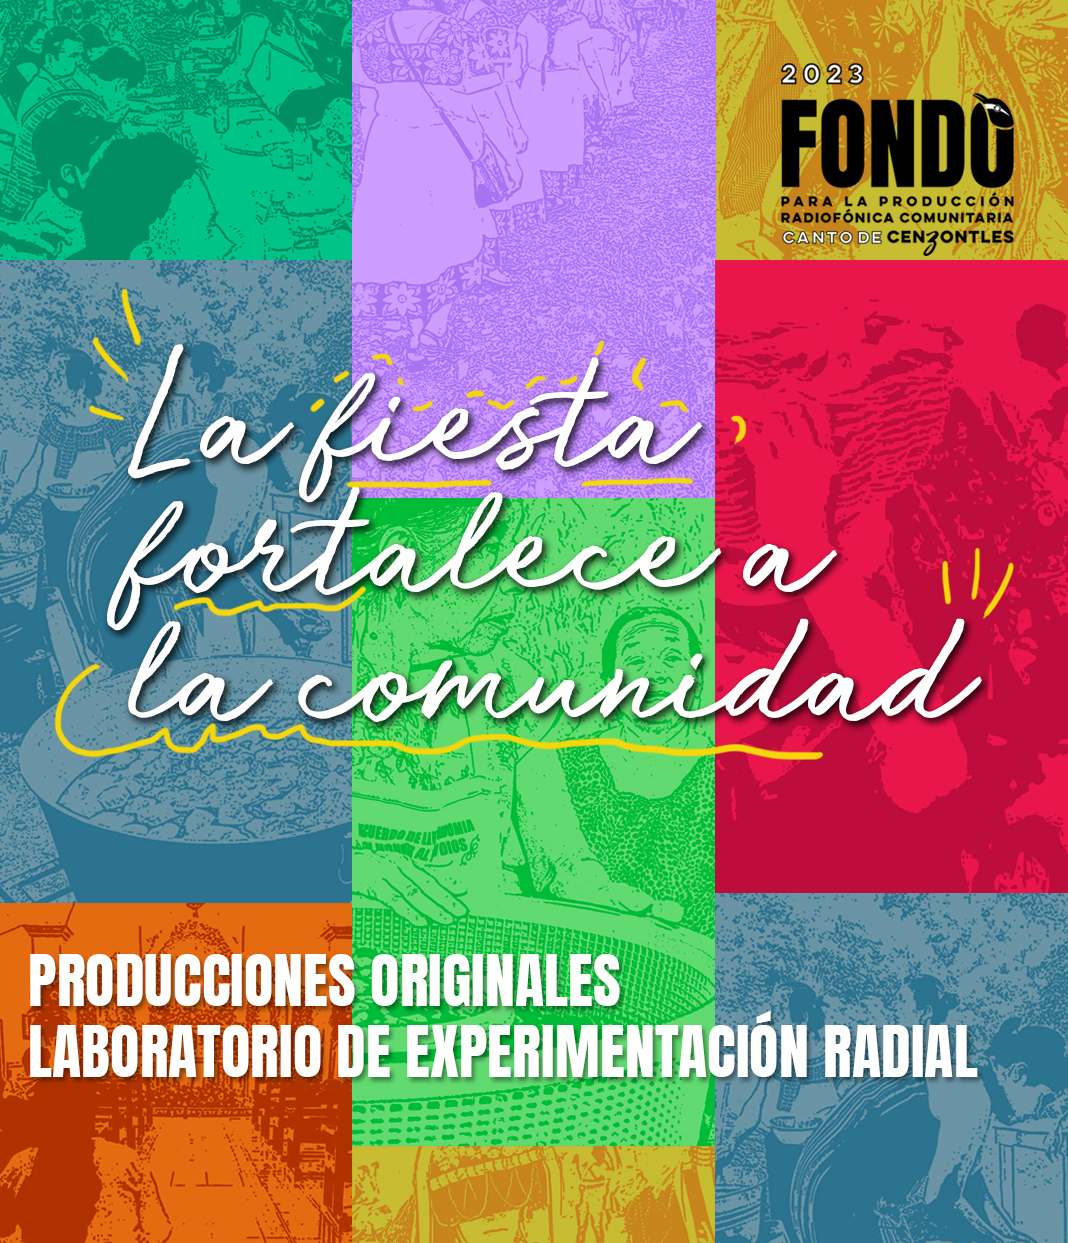  “La fiesta fortalece la comunidad”: Radios comunitarias mexicanas producen series radiales